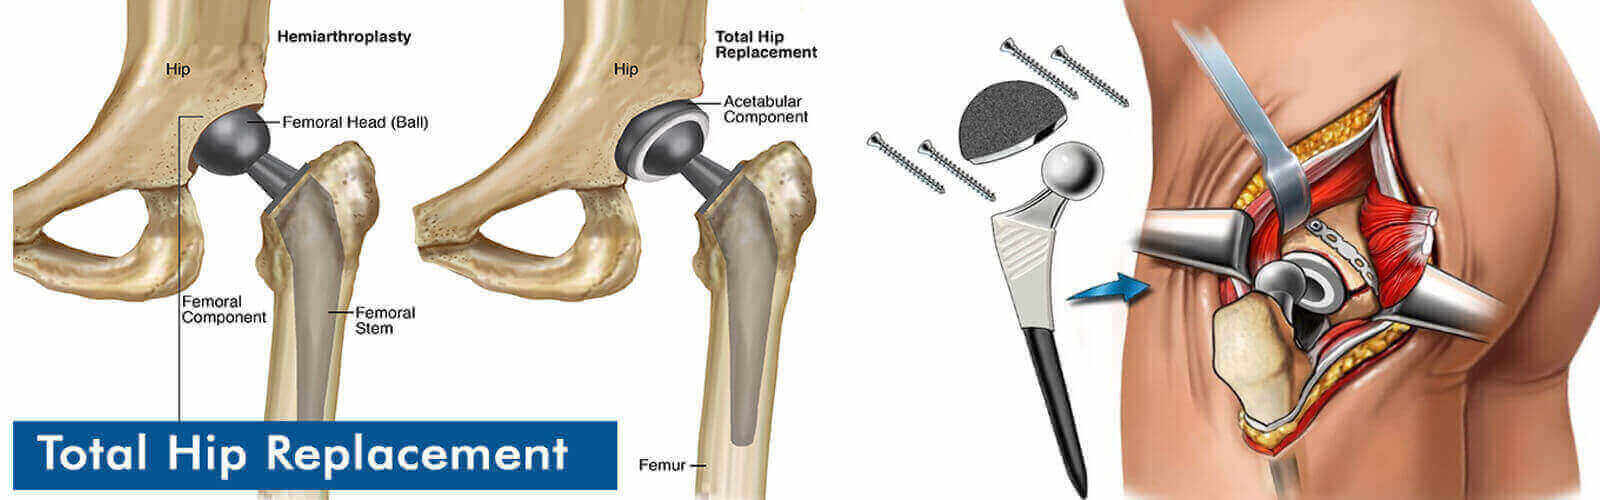 Hip Replacement Surgery Or Hip Resurfacing in Dubai